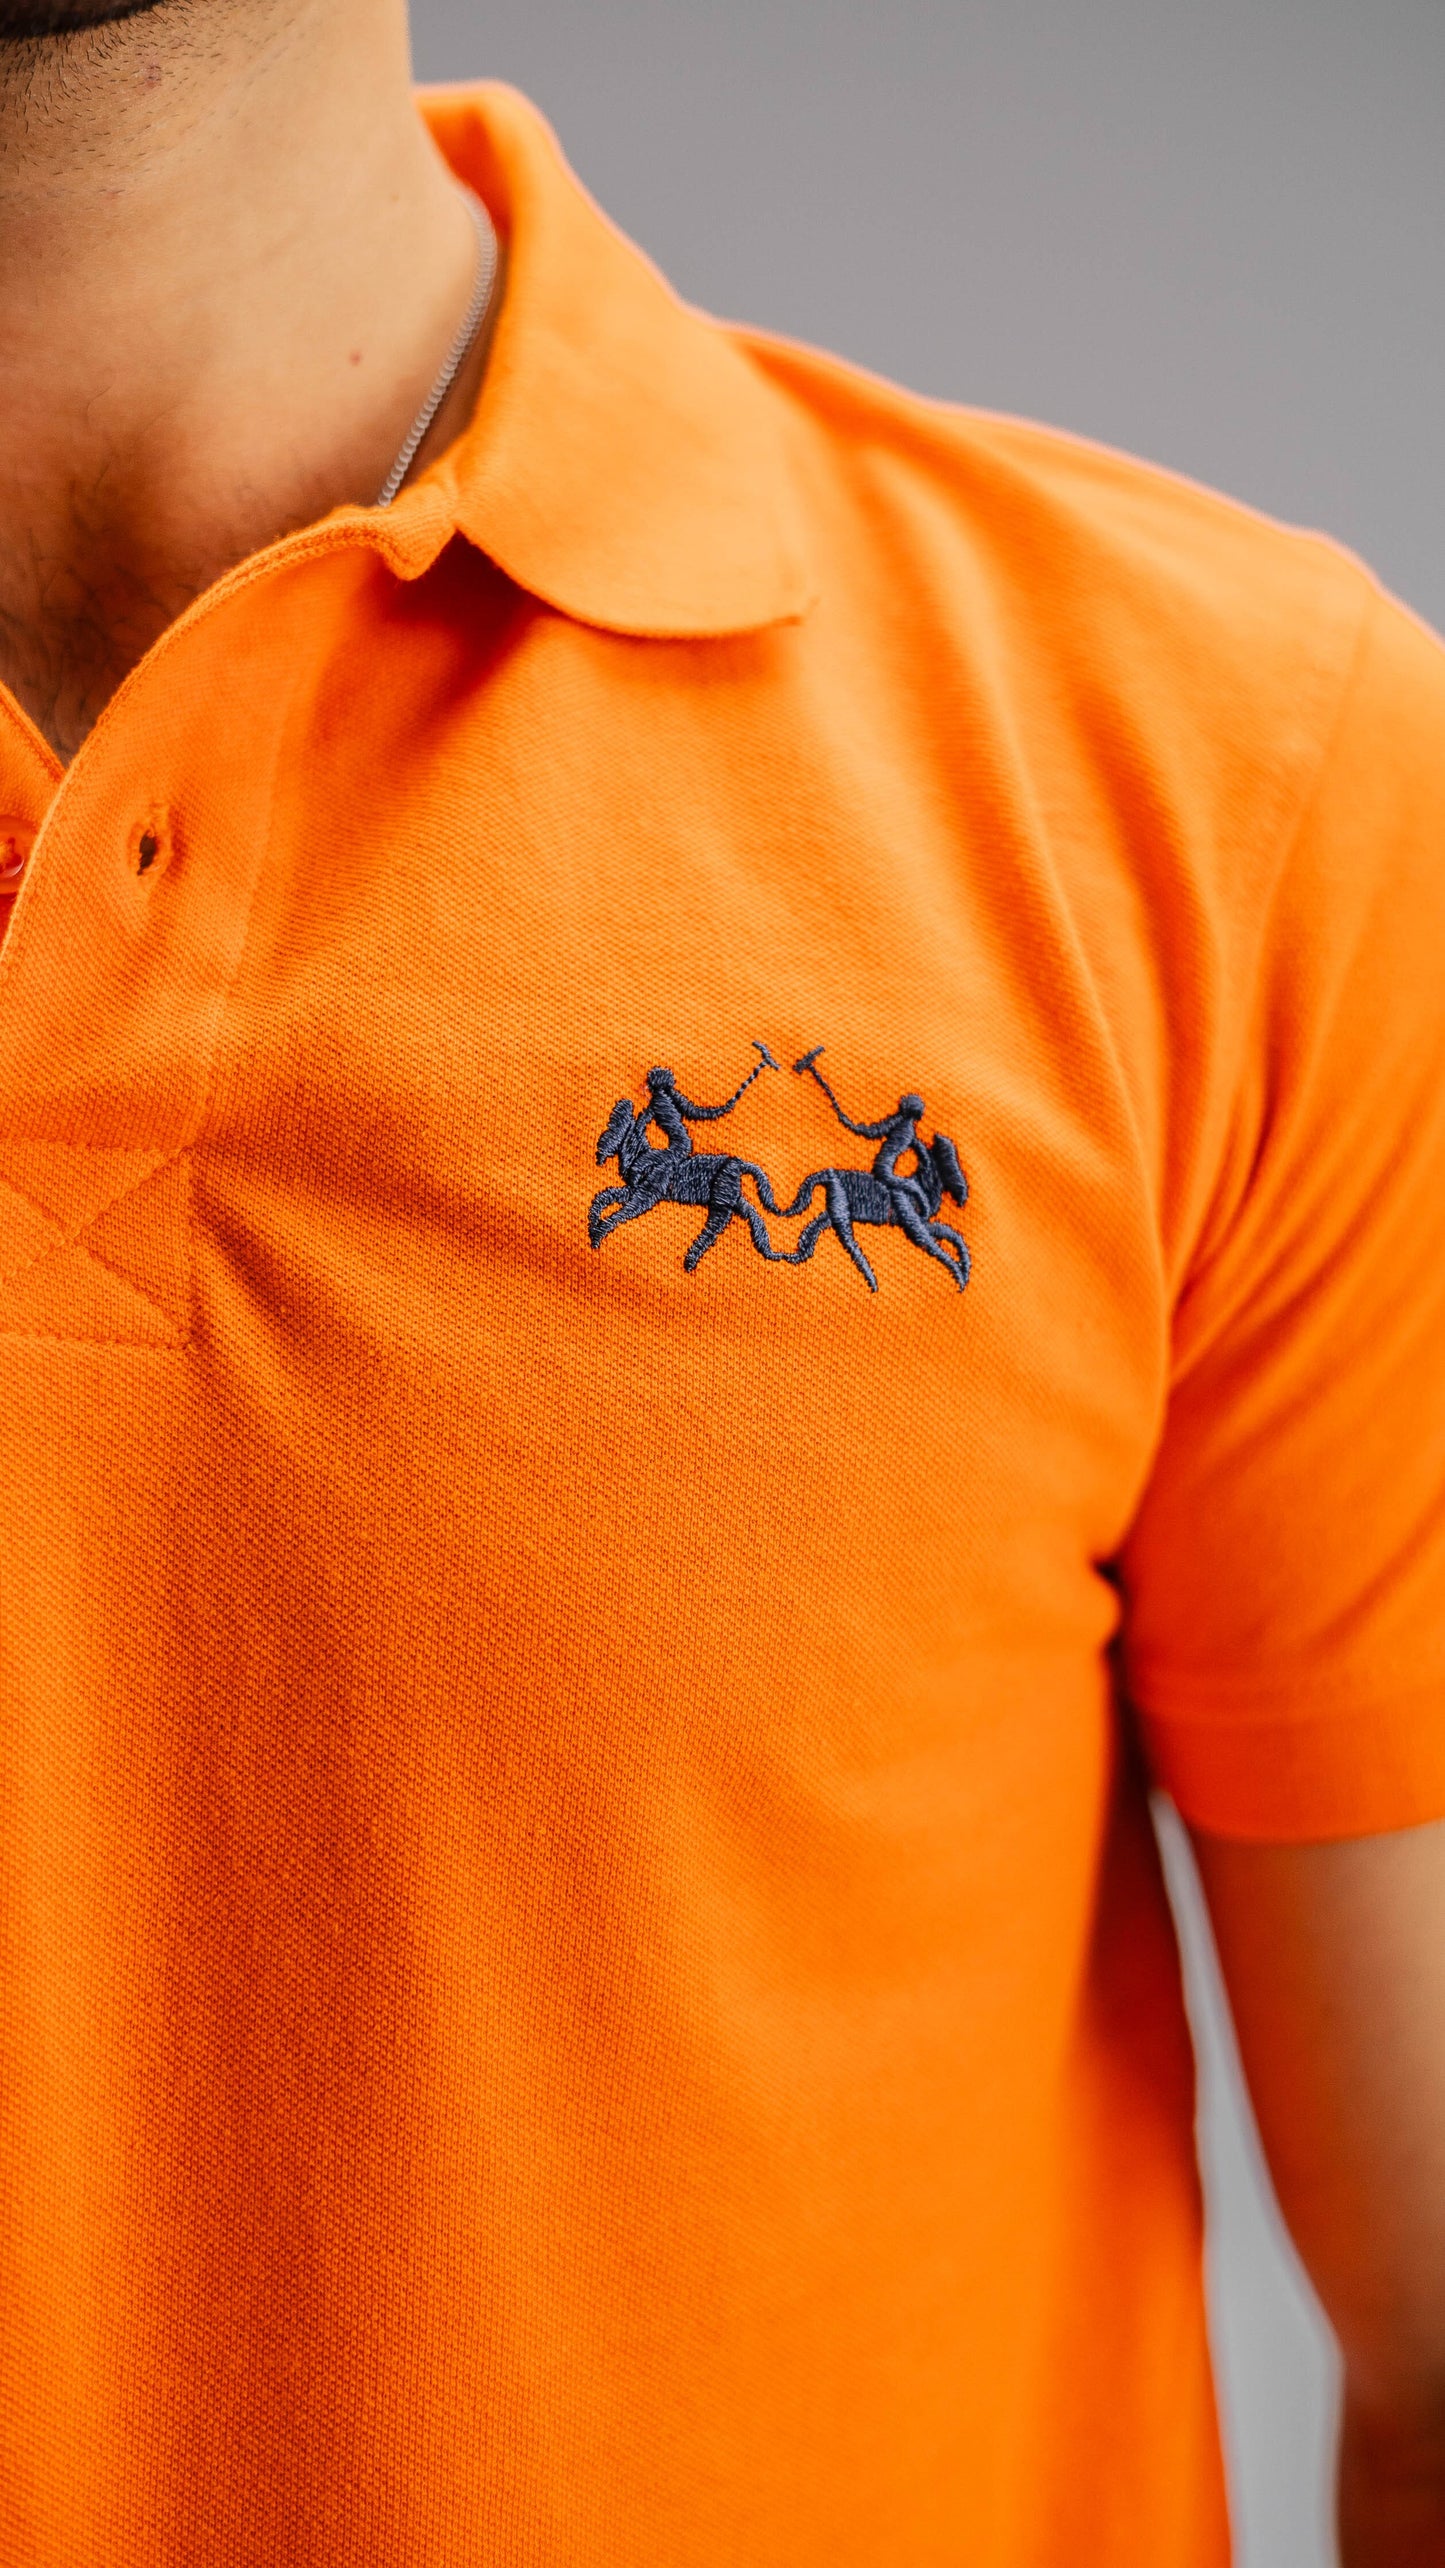 Polo Republica Men's Two Horse Rider & PR Embroidered Short Sleeve Polo Shirt Men's Polo Shirt Polo Republica 